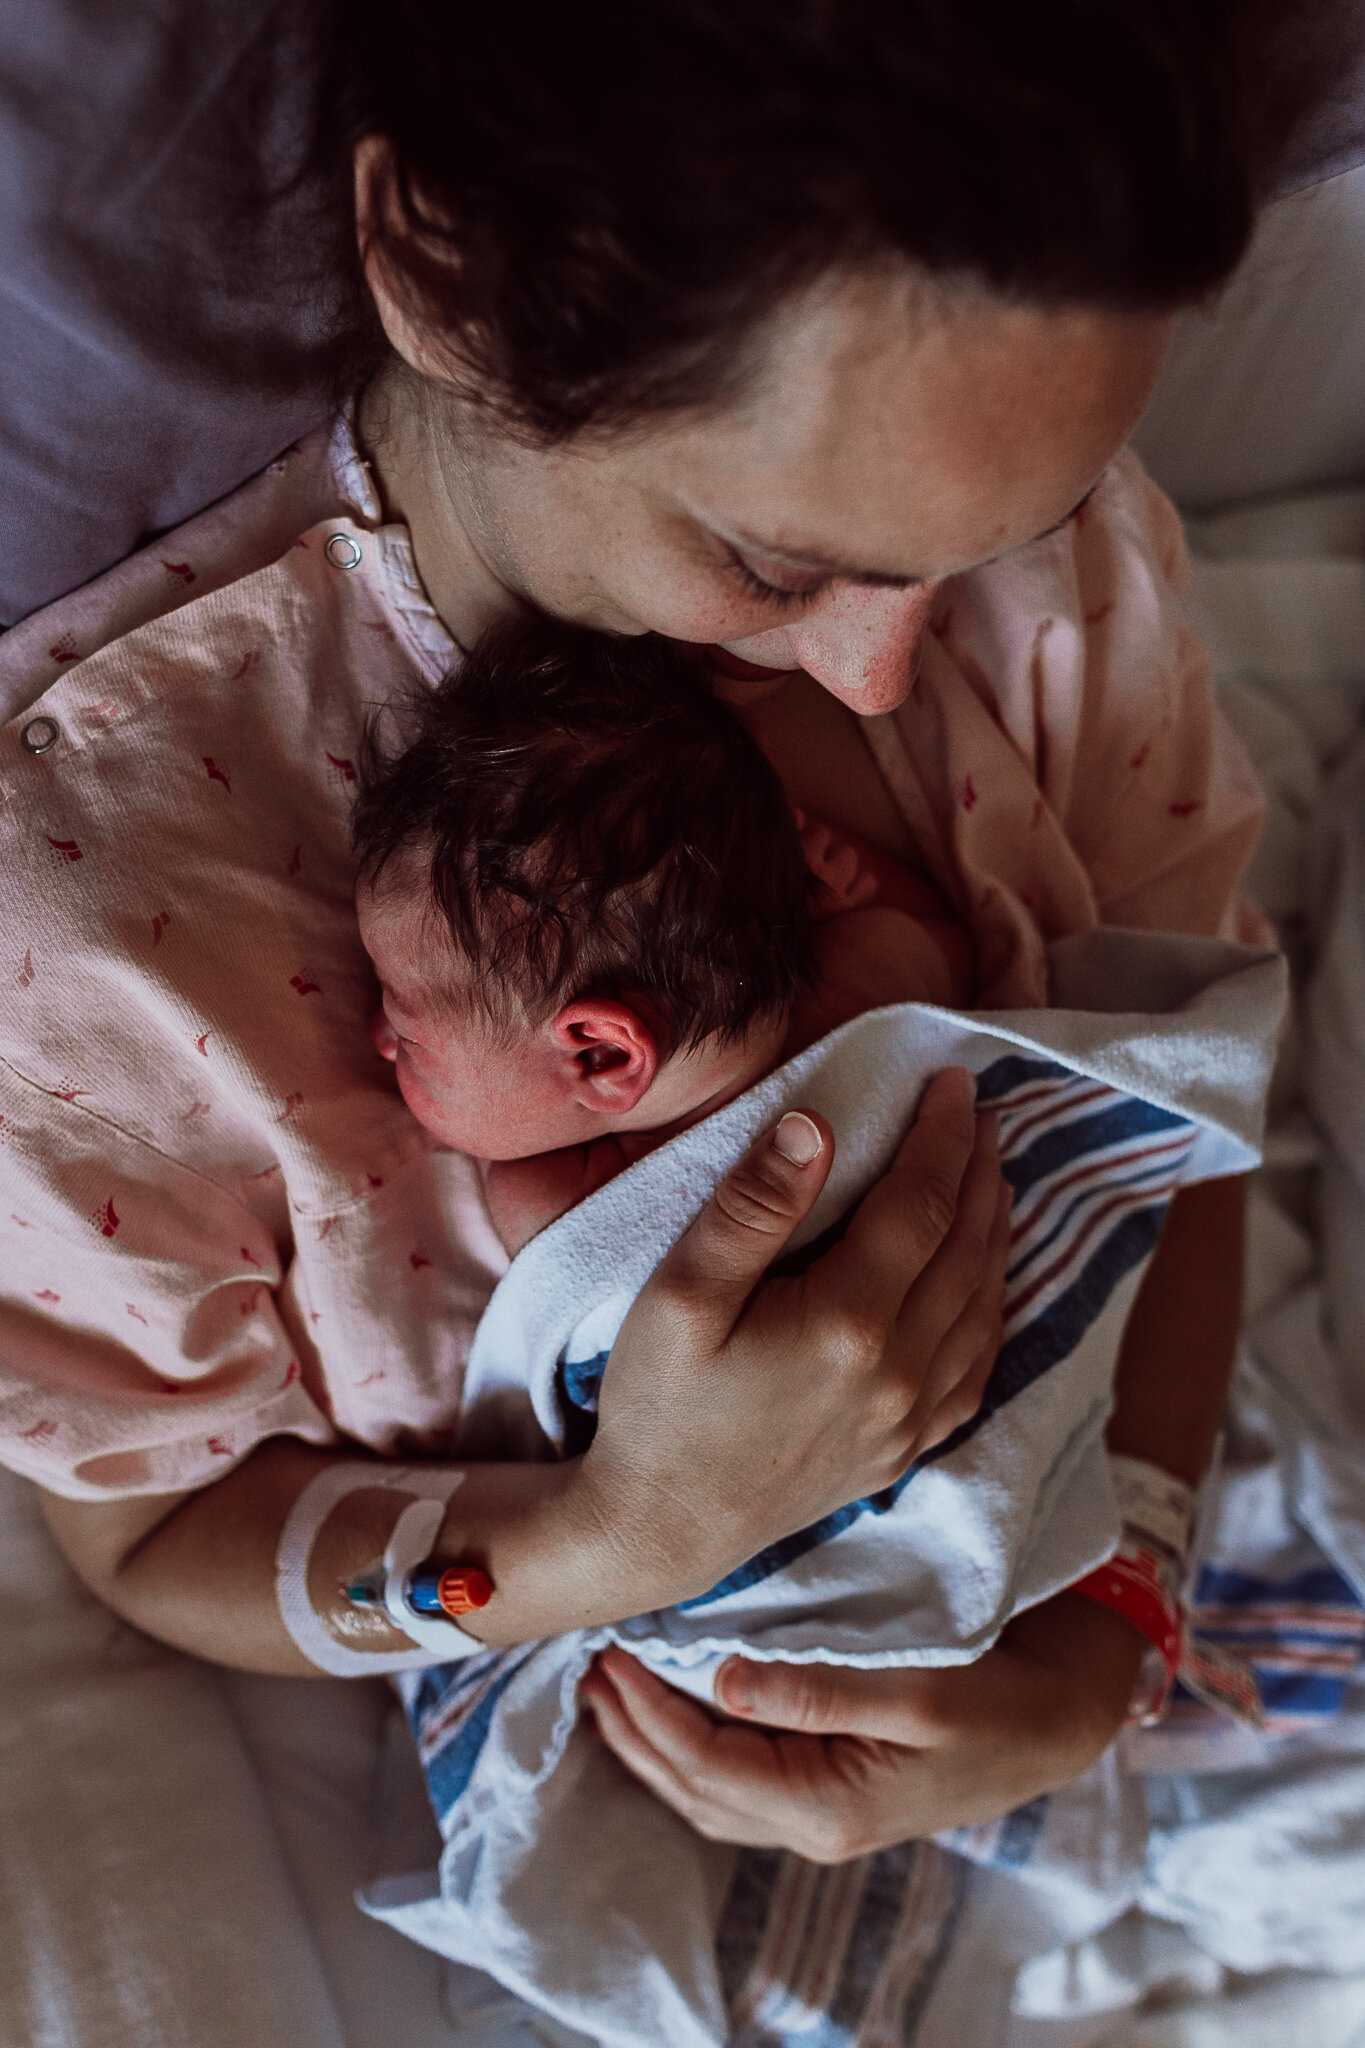 cesarean-birth-postpartum-maggie-williams-4110.jpg